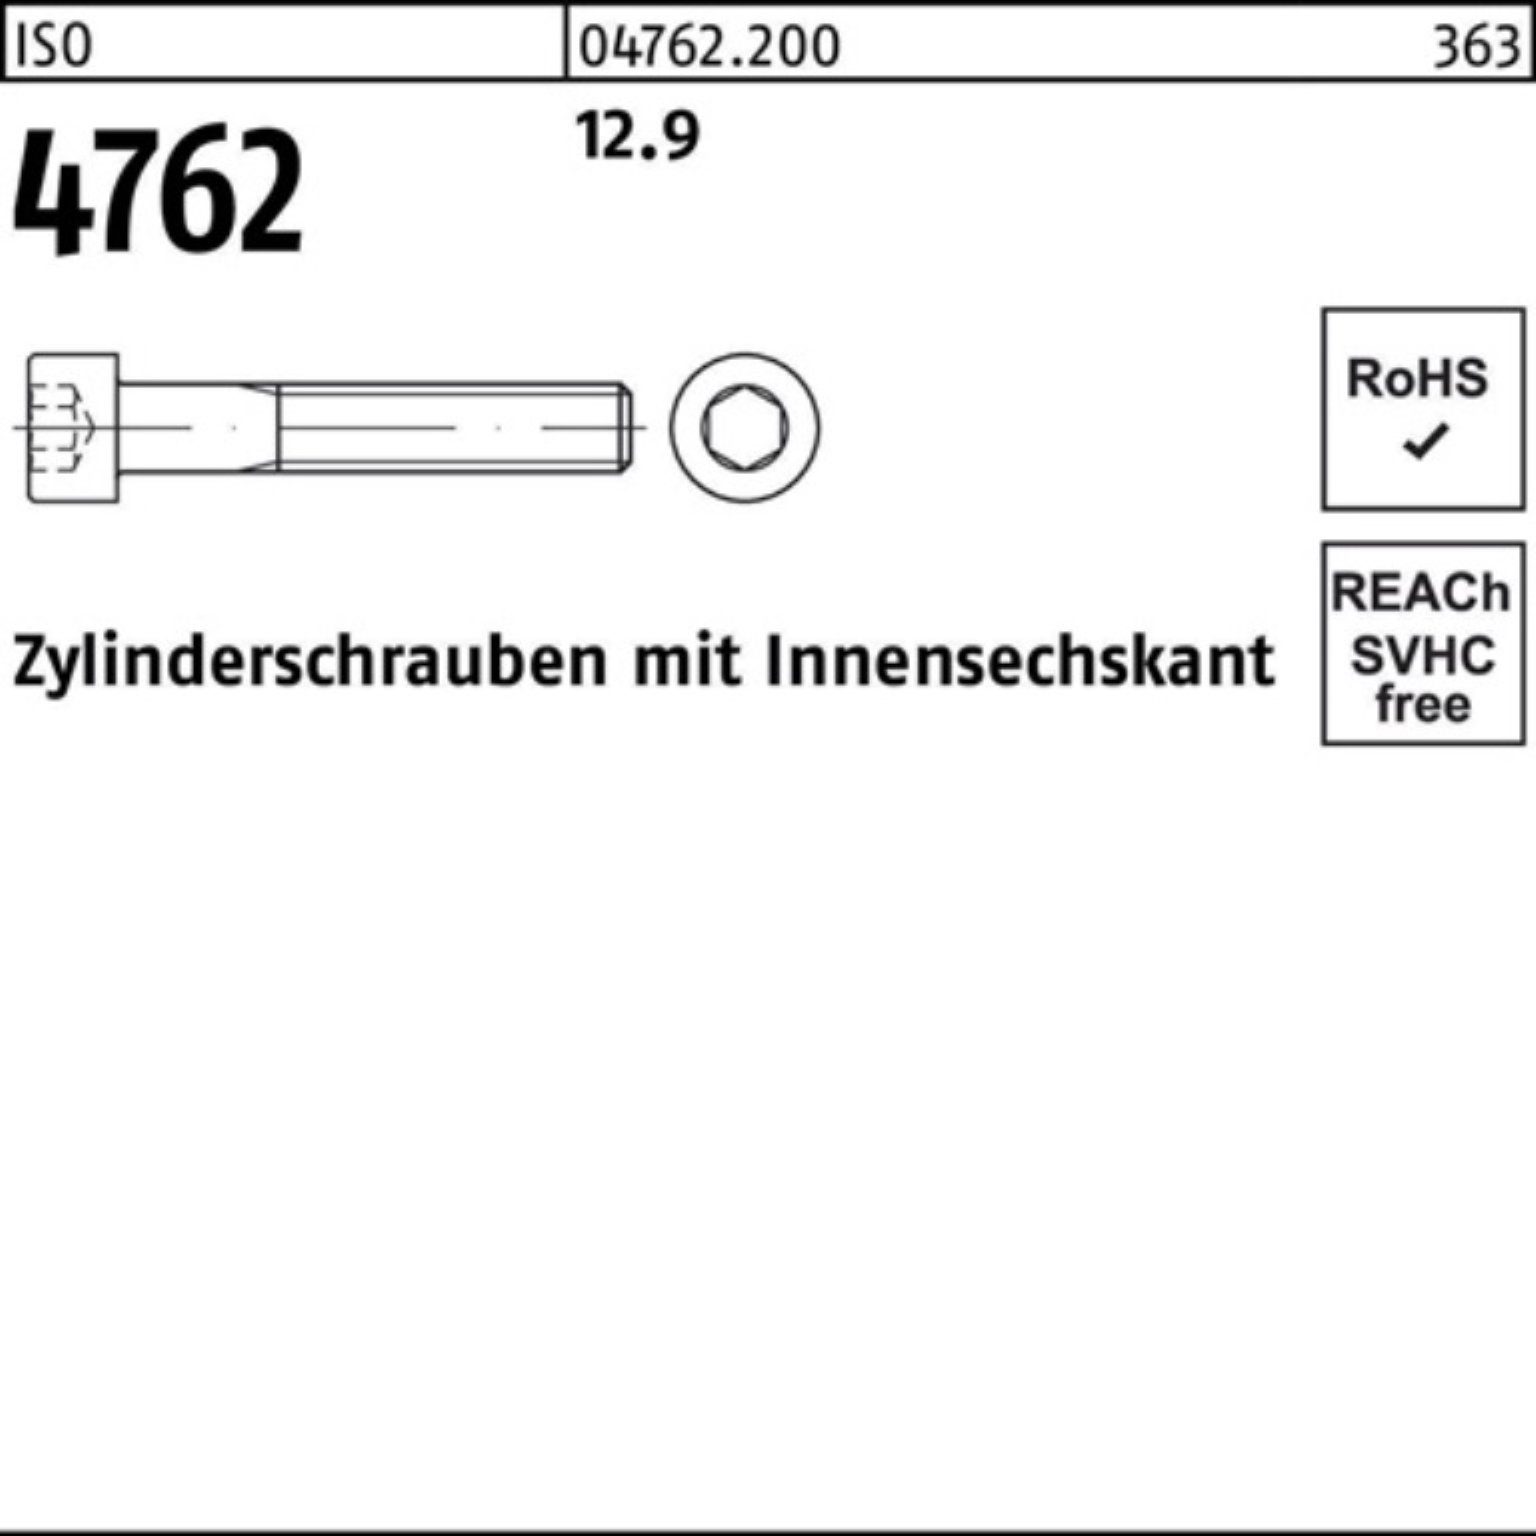 Innen-6kt 1 Zylinderschraube Zylinderschraube 70 M30x 4762 Stück Reyher I 100er Pack 12.9 ISO